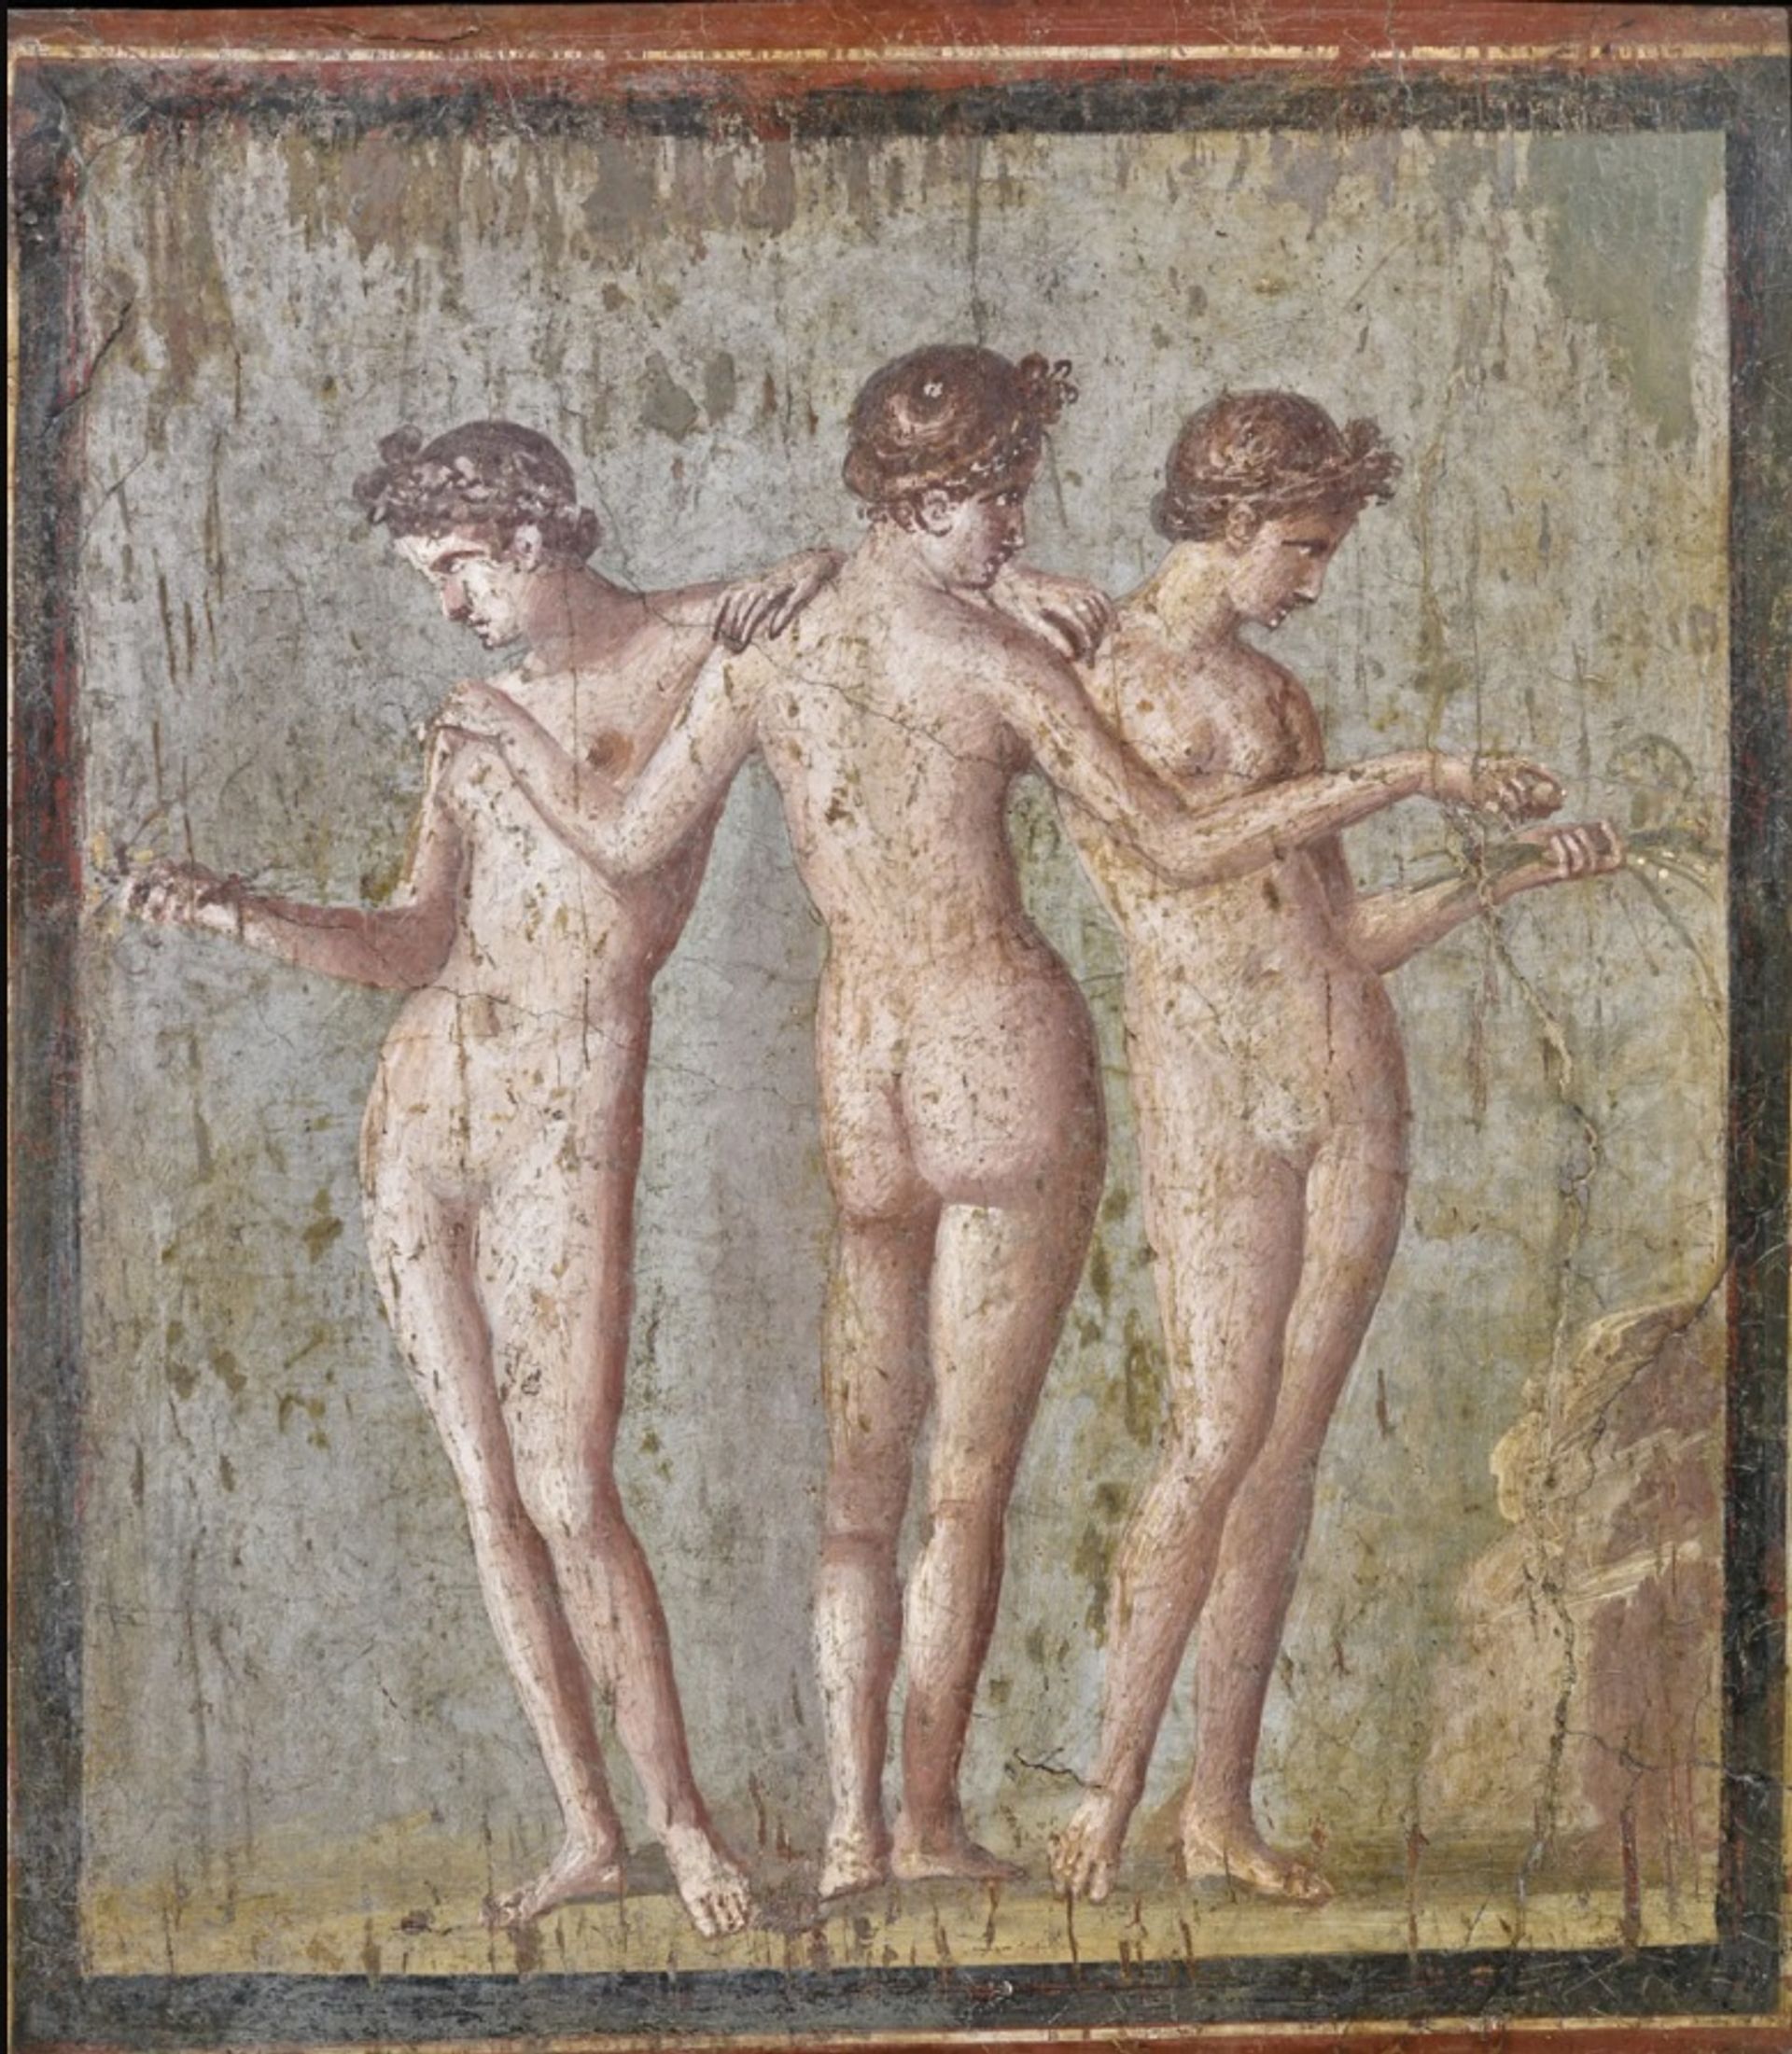 בין ציורי הקיר הפומפיאניים, היוצאים מקמרונות המוזיאון של נאפולי לתערוכה חדשה בבולוניה, נמצא התיאור האנדרוגיני הזה של שלושת החסדים, נושא ששימש מאוחר יותר את בוטיצ'לי ורפאל

MANN; באדיבות ה-Museo Archeologico di Bologna